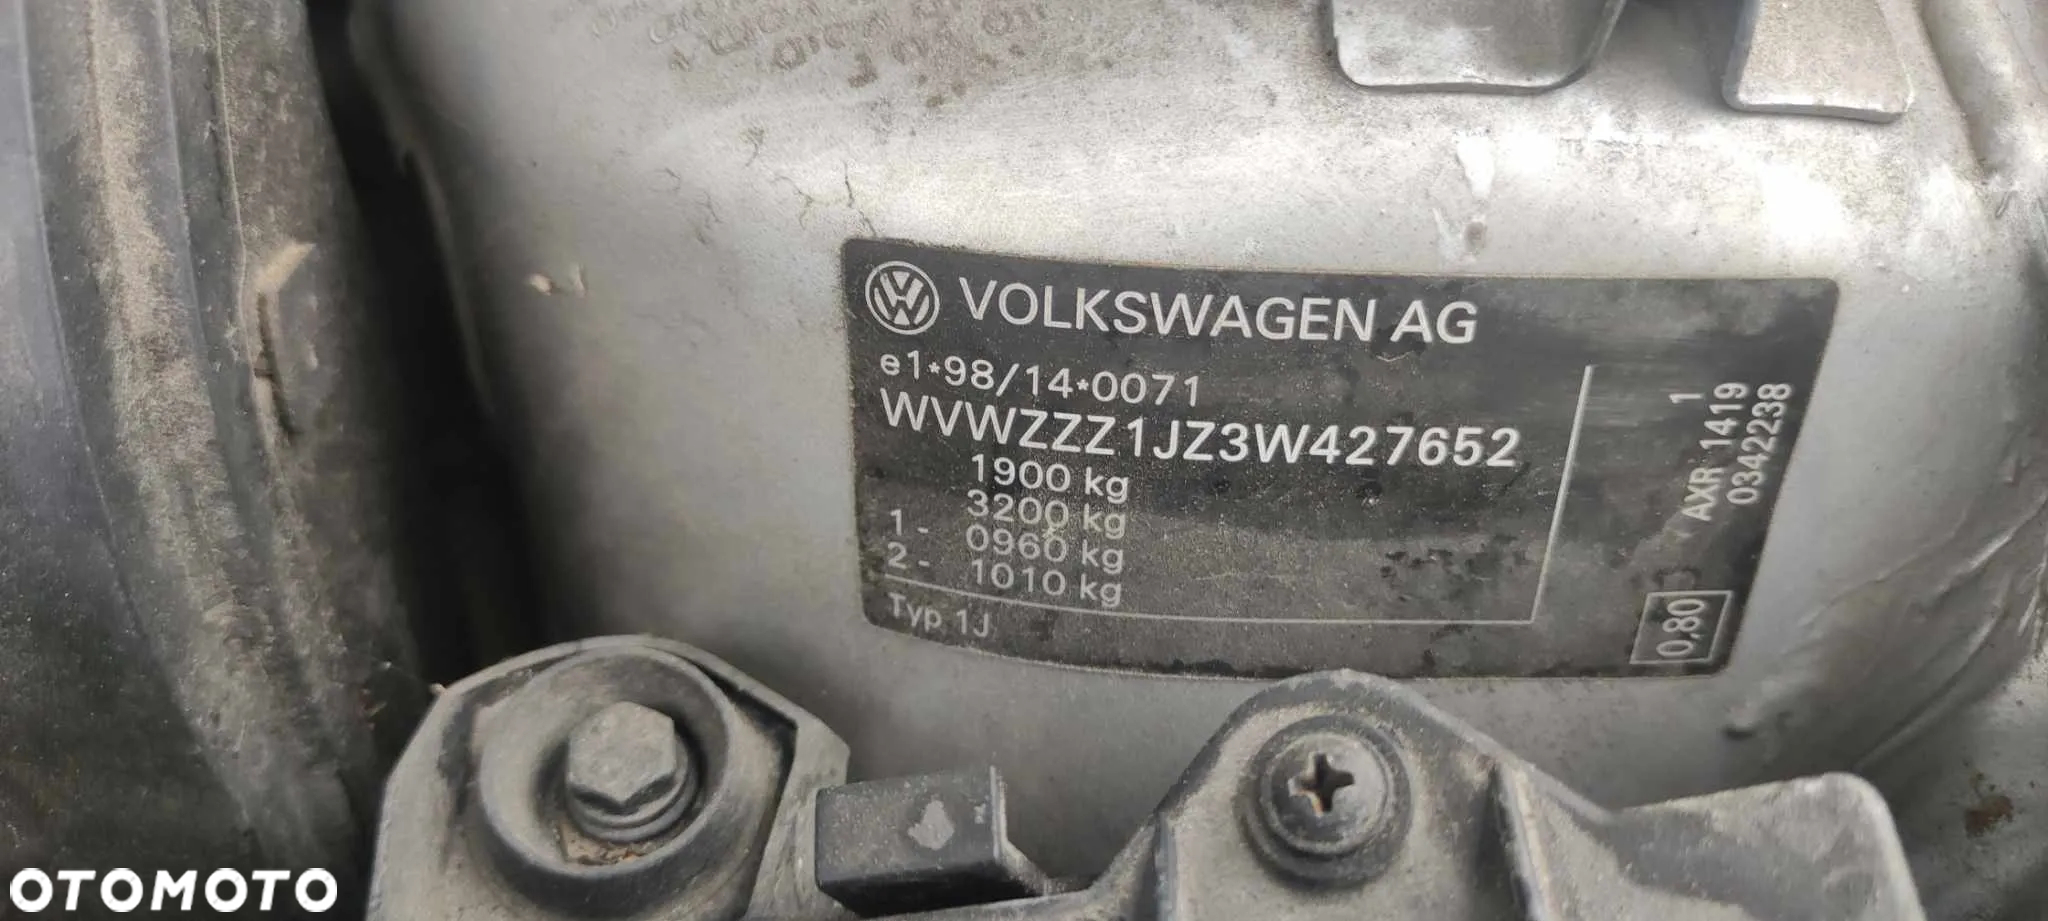 Volkswagen Golf - 23